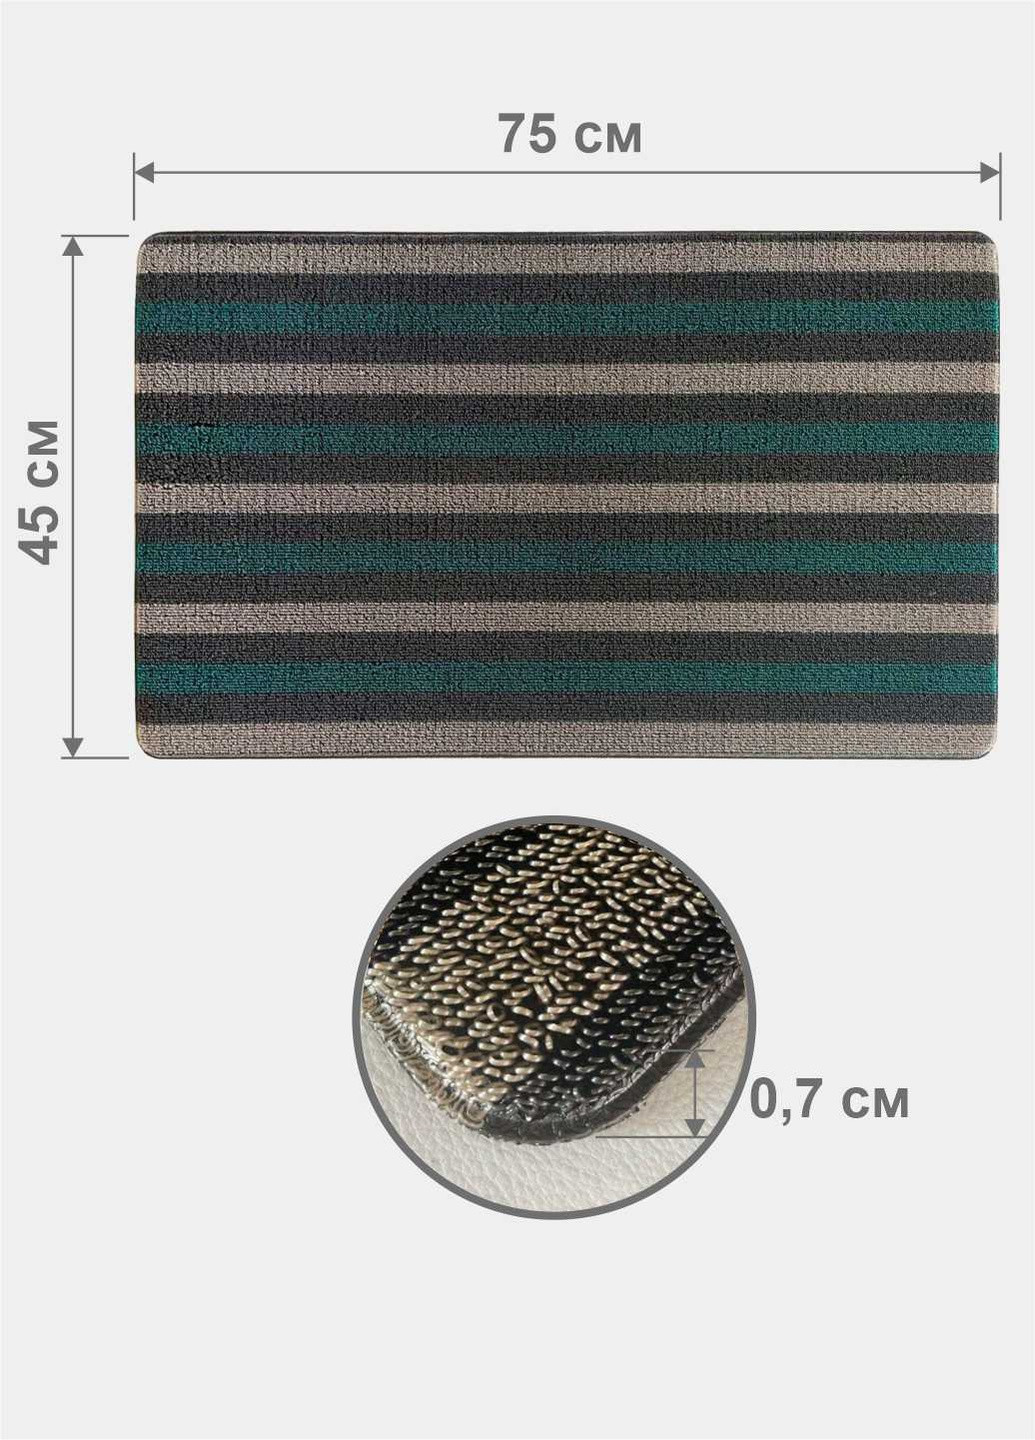 Дверний килимок з петлевою щетиною розміром 45 x 75 для внутрішнього зовнішнього входу - зелена полоска Lovely Svi (254545879)